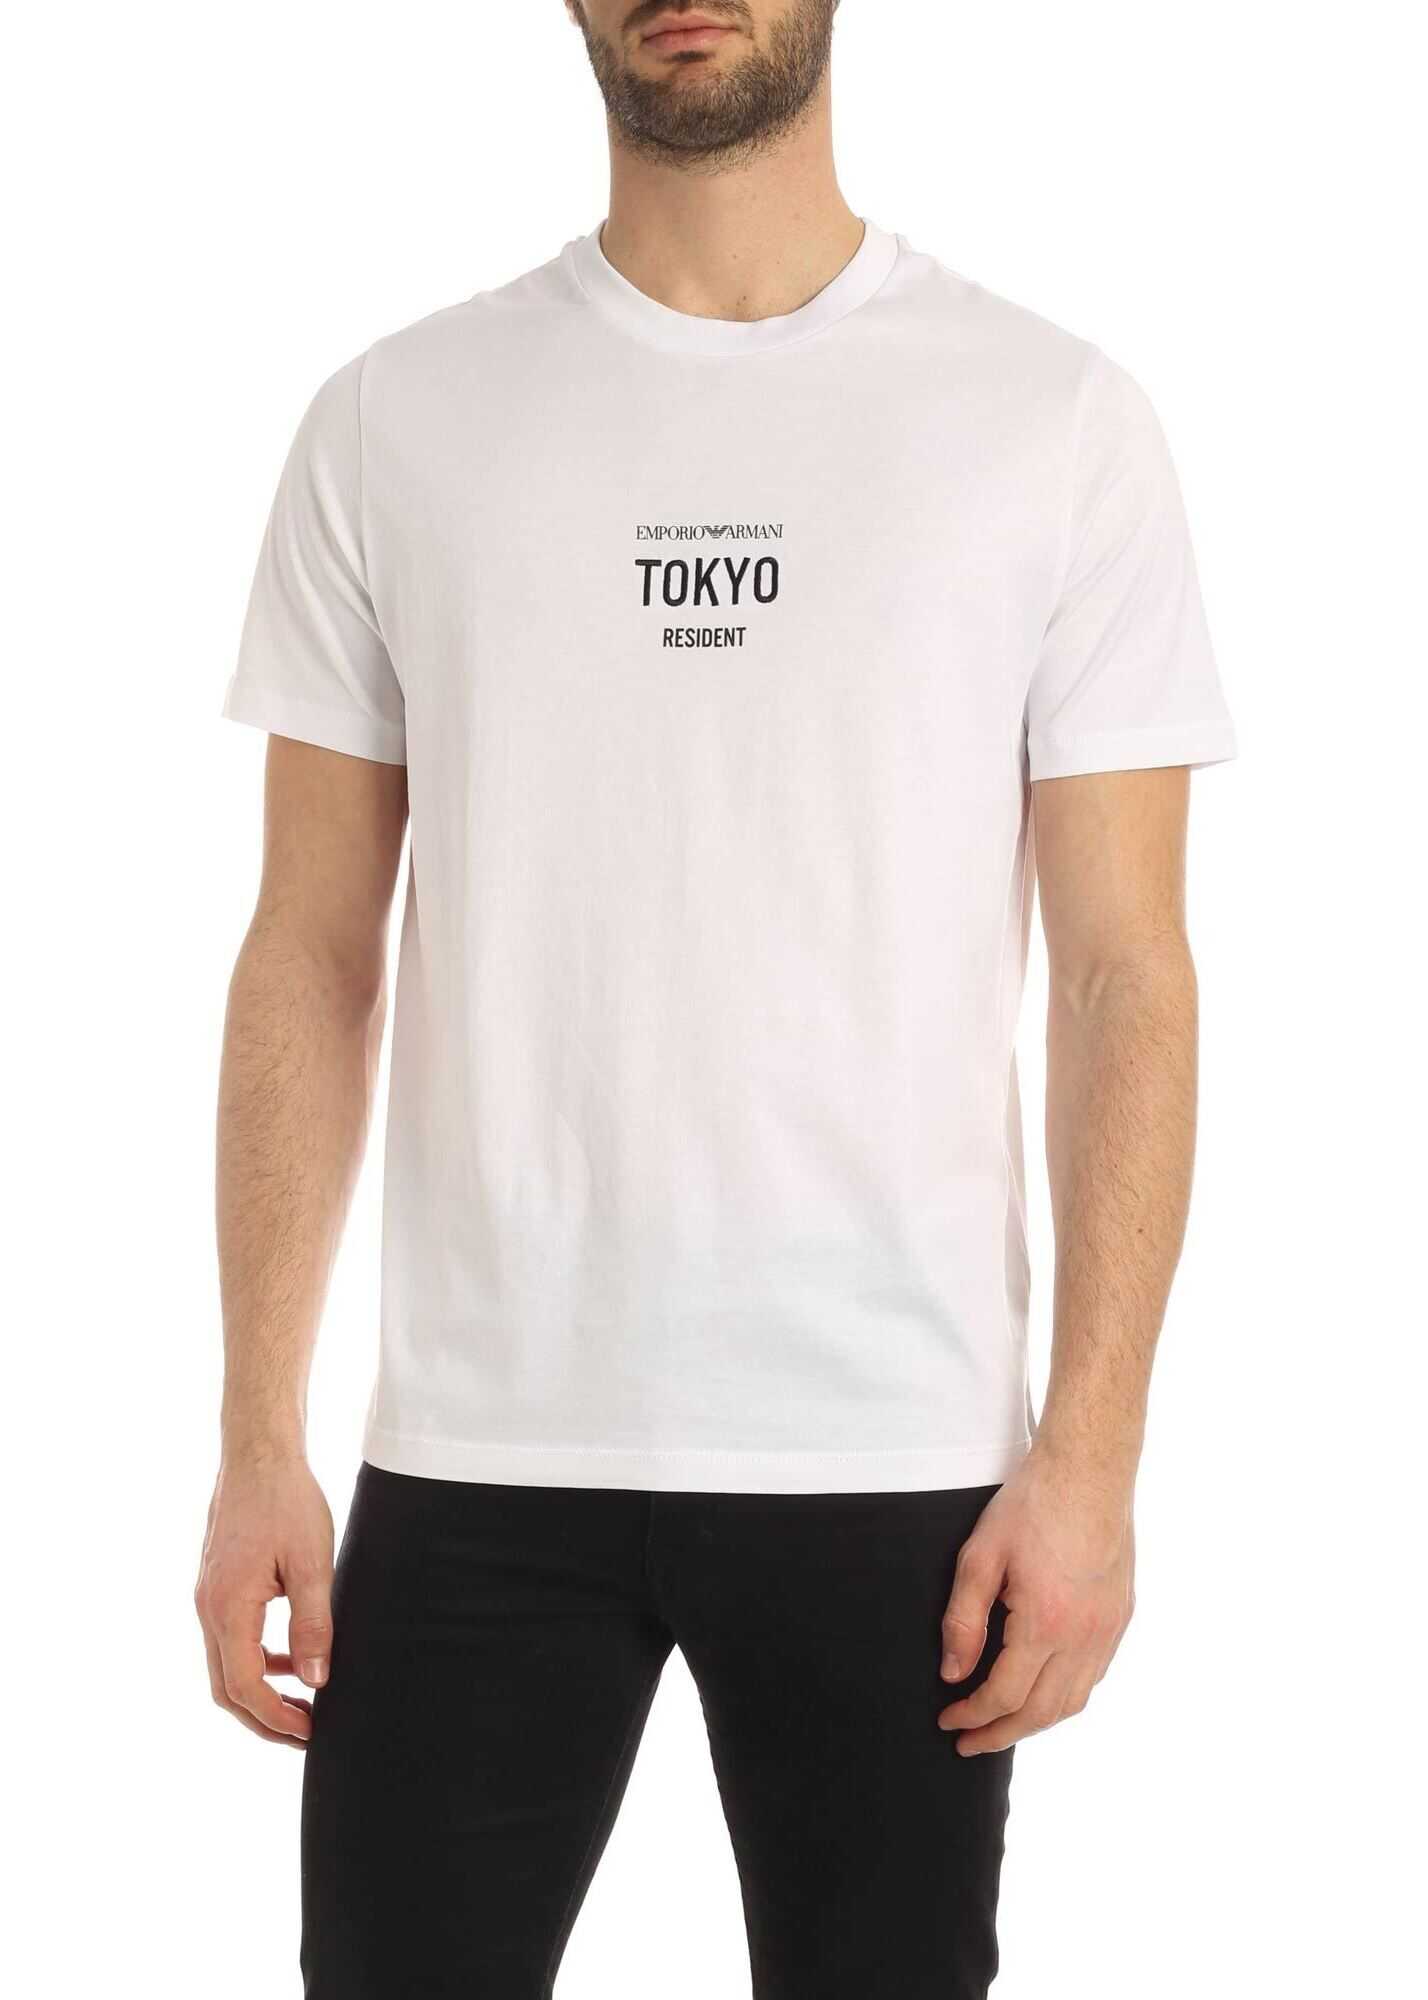 Emporio Armani Fashion City Resident Tokyo T-Shirt In White White